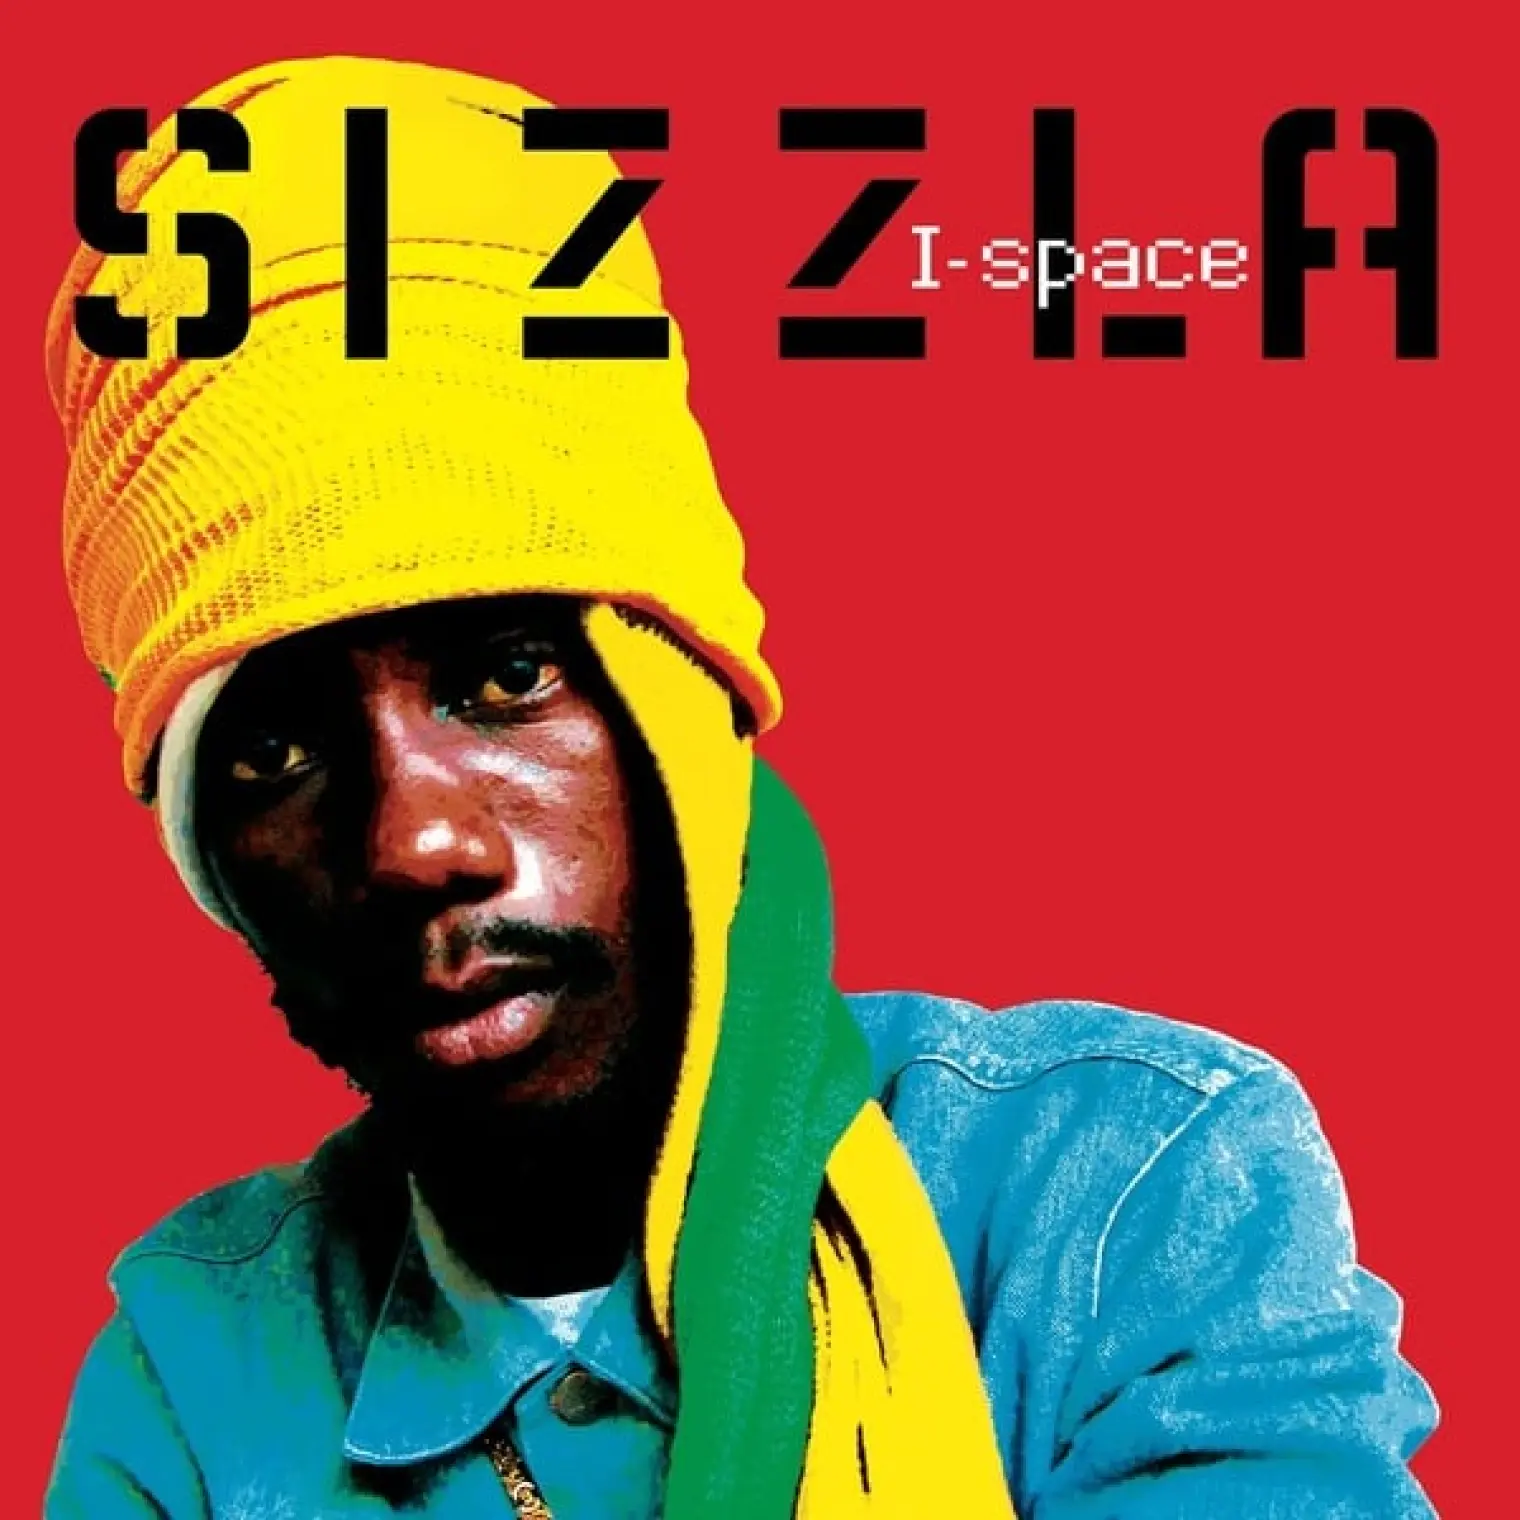 I-Space -  Sizzla 